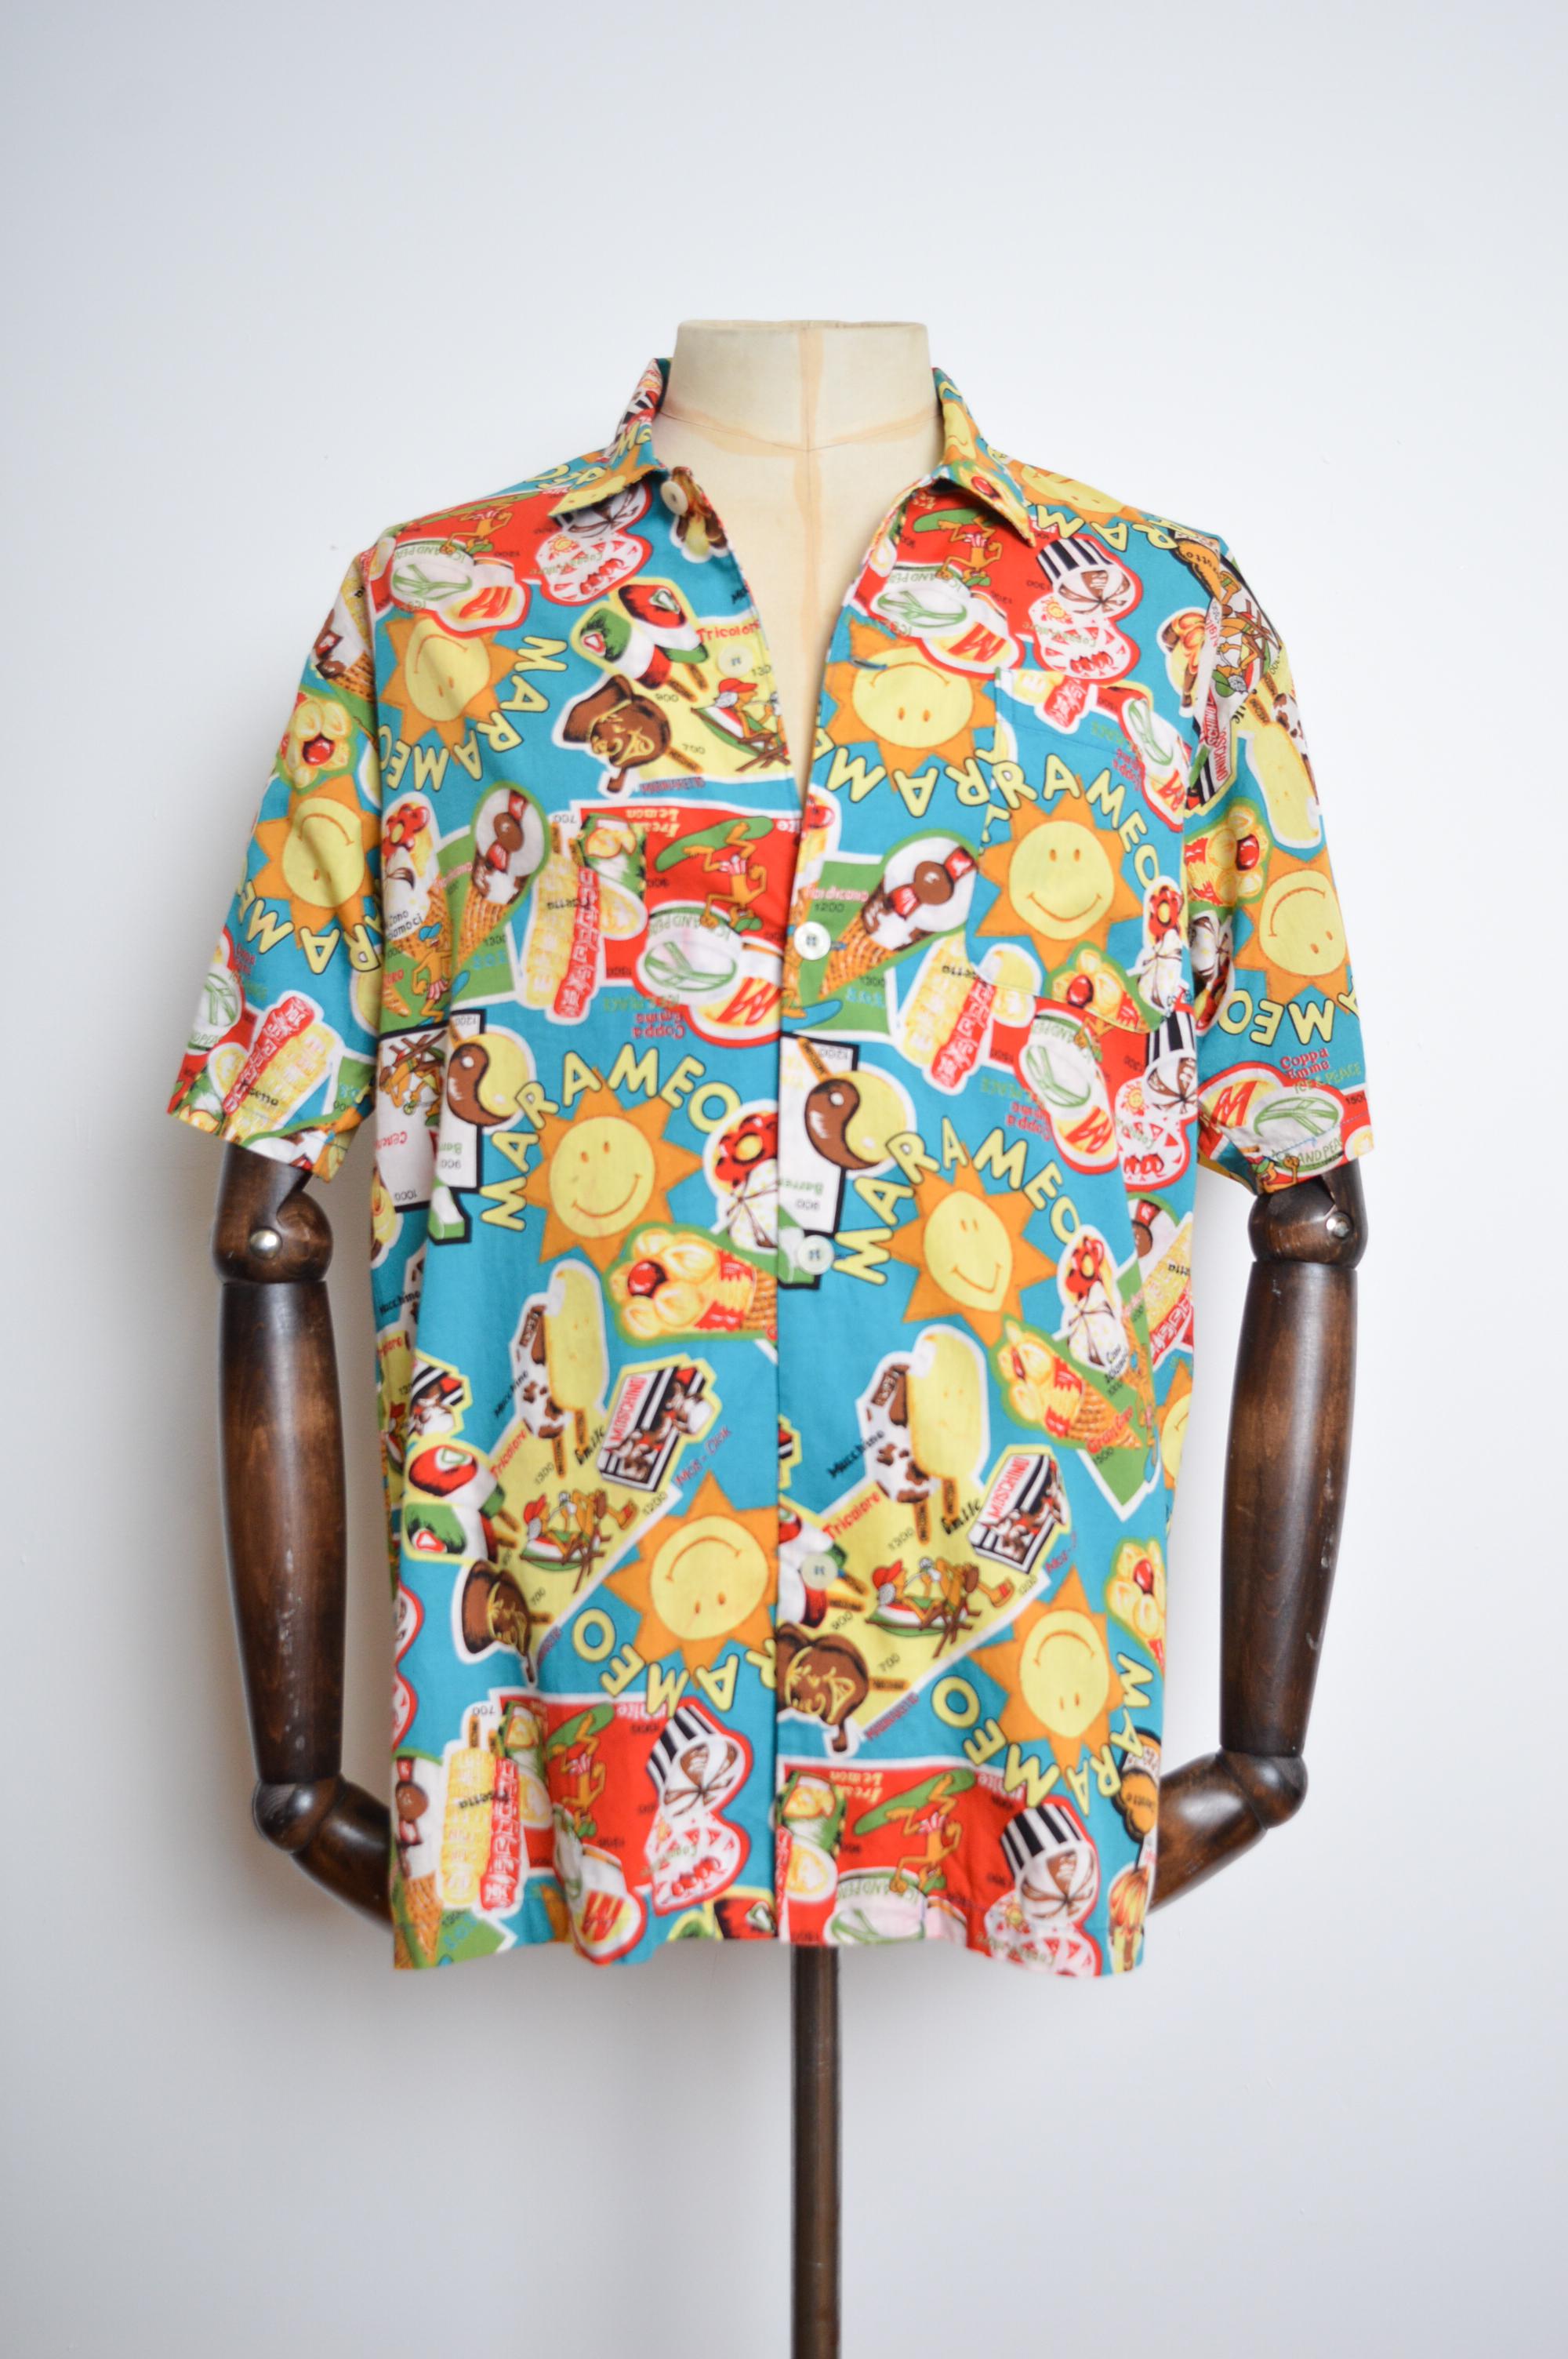 1990's Vintage 'MOSCHINO' Hemd mit Eiscreme-Muster und kurzen Ärmeln, gefertigt aus farbenfroh bedruckter Baumwolle. Perfekt für die Summer Raves.

GEFERTIGT IN JAPAN.  
Eigenschaften: Knöpfe auf der Vorderseite, Kragen, kurze Ärmel, Brusttasche,